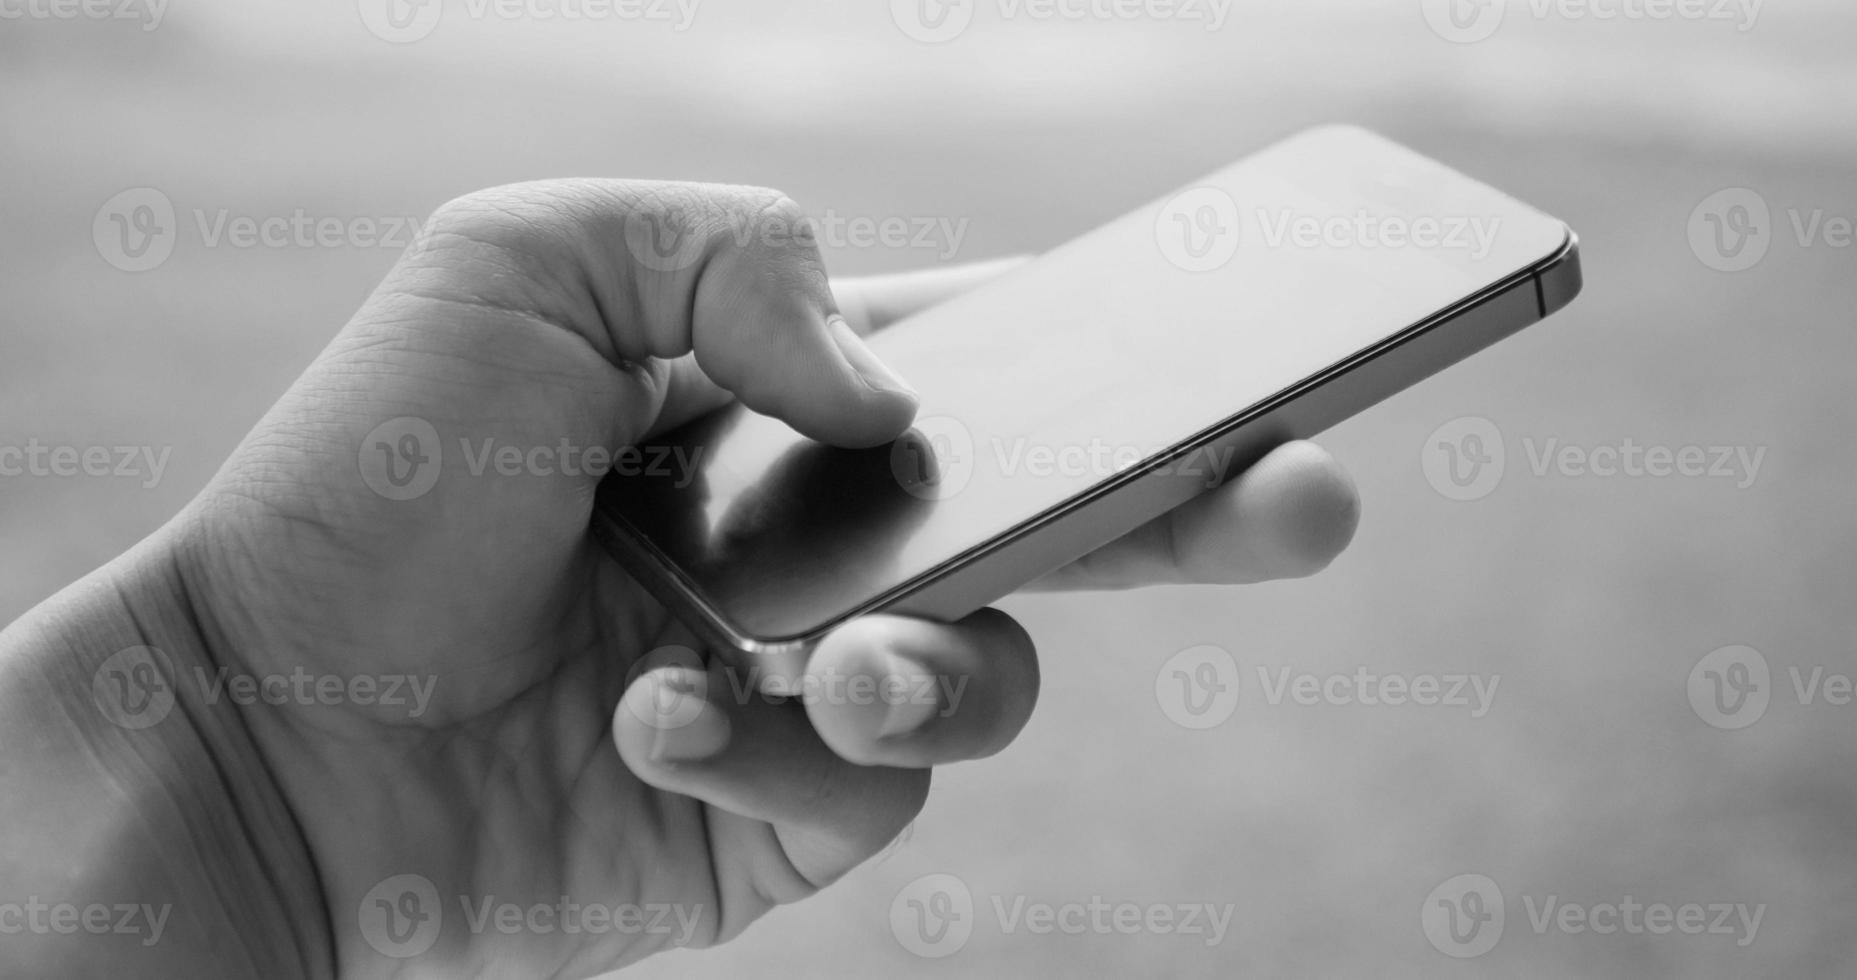 sostenga y toque el teléfono inteligente, imagen en tono blanco y negro foto